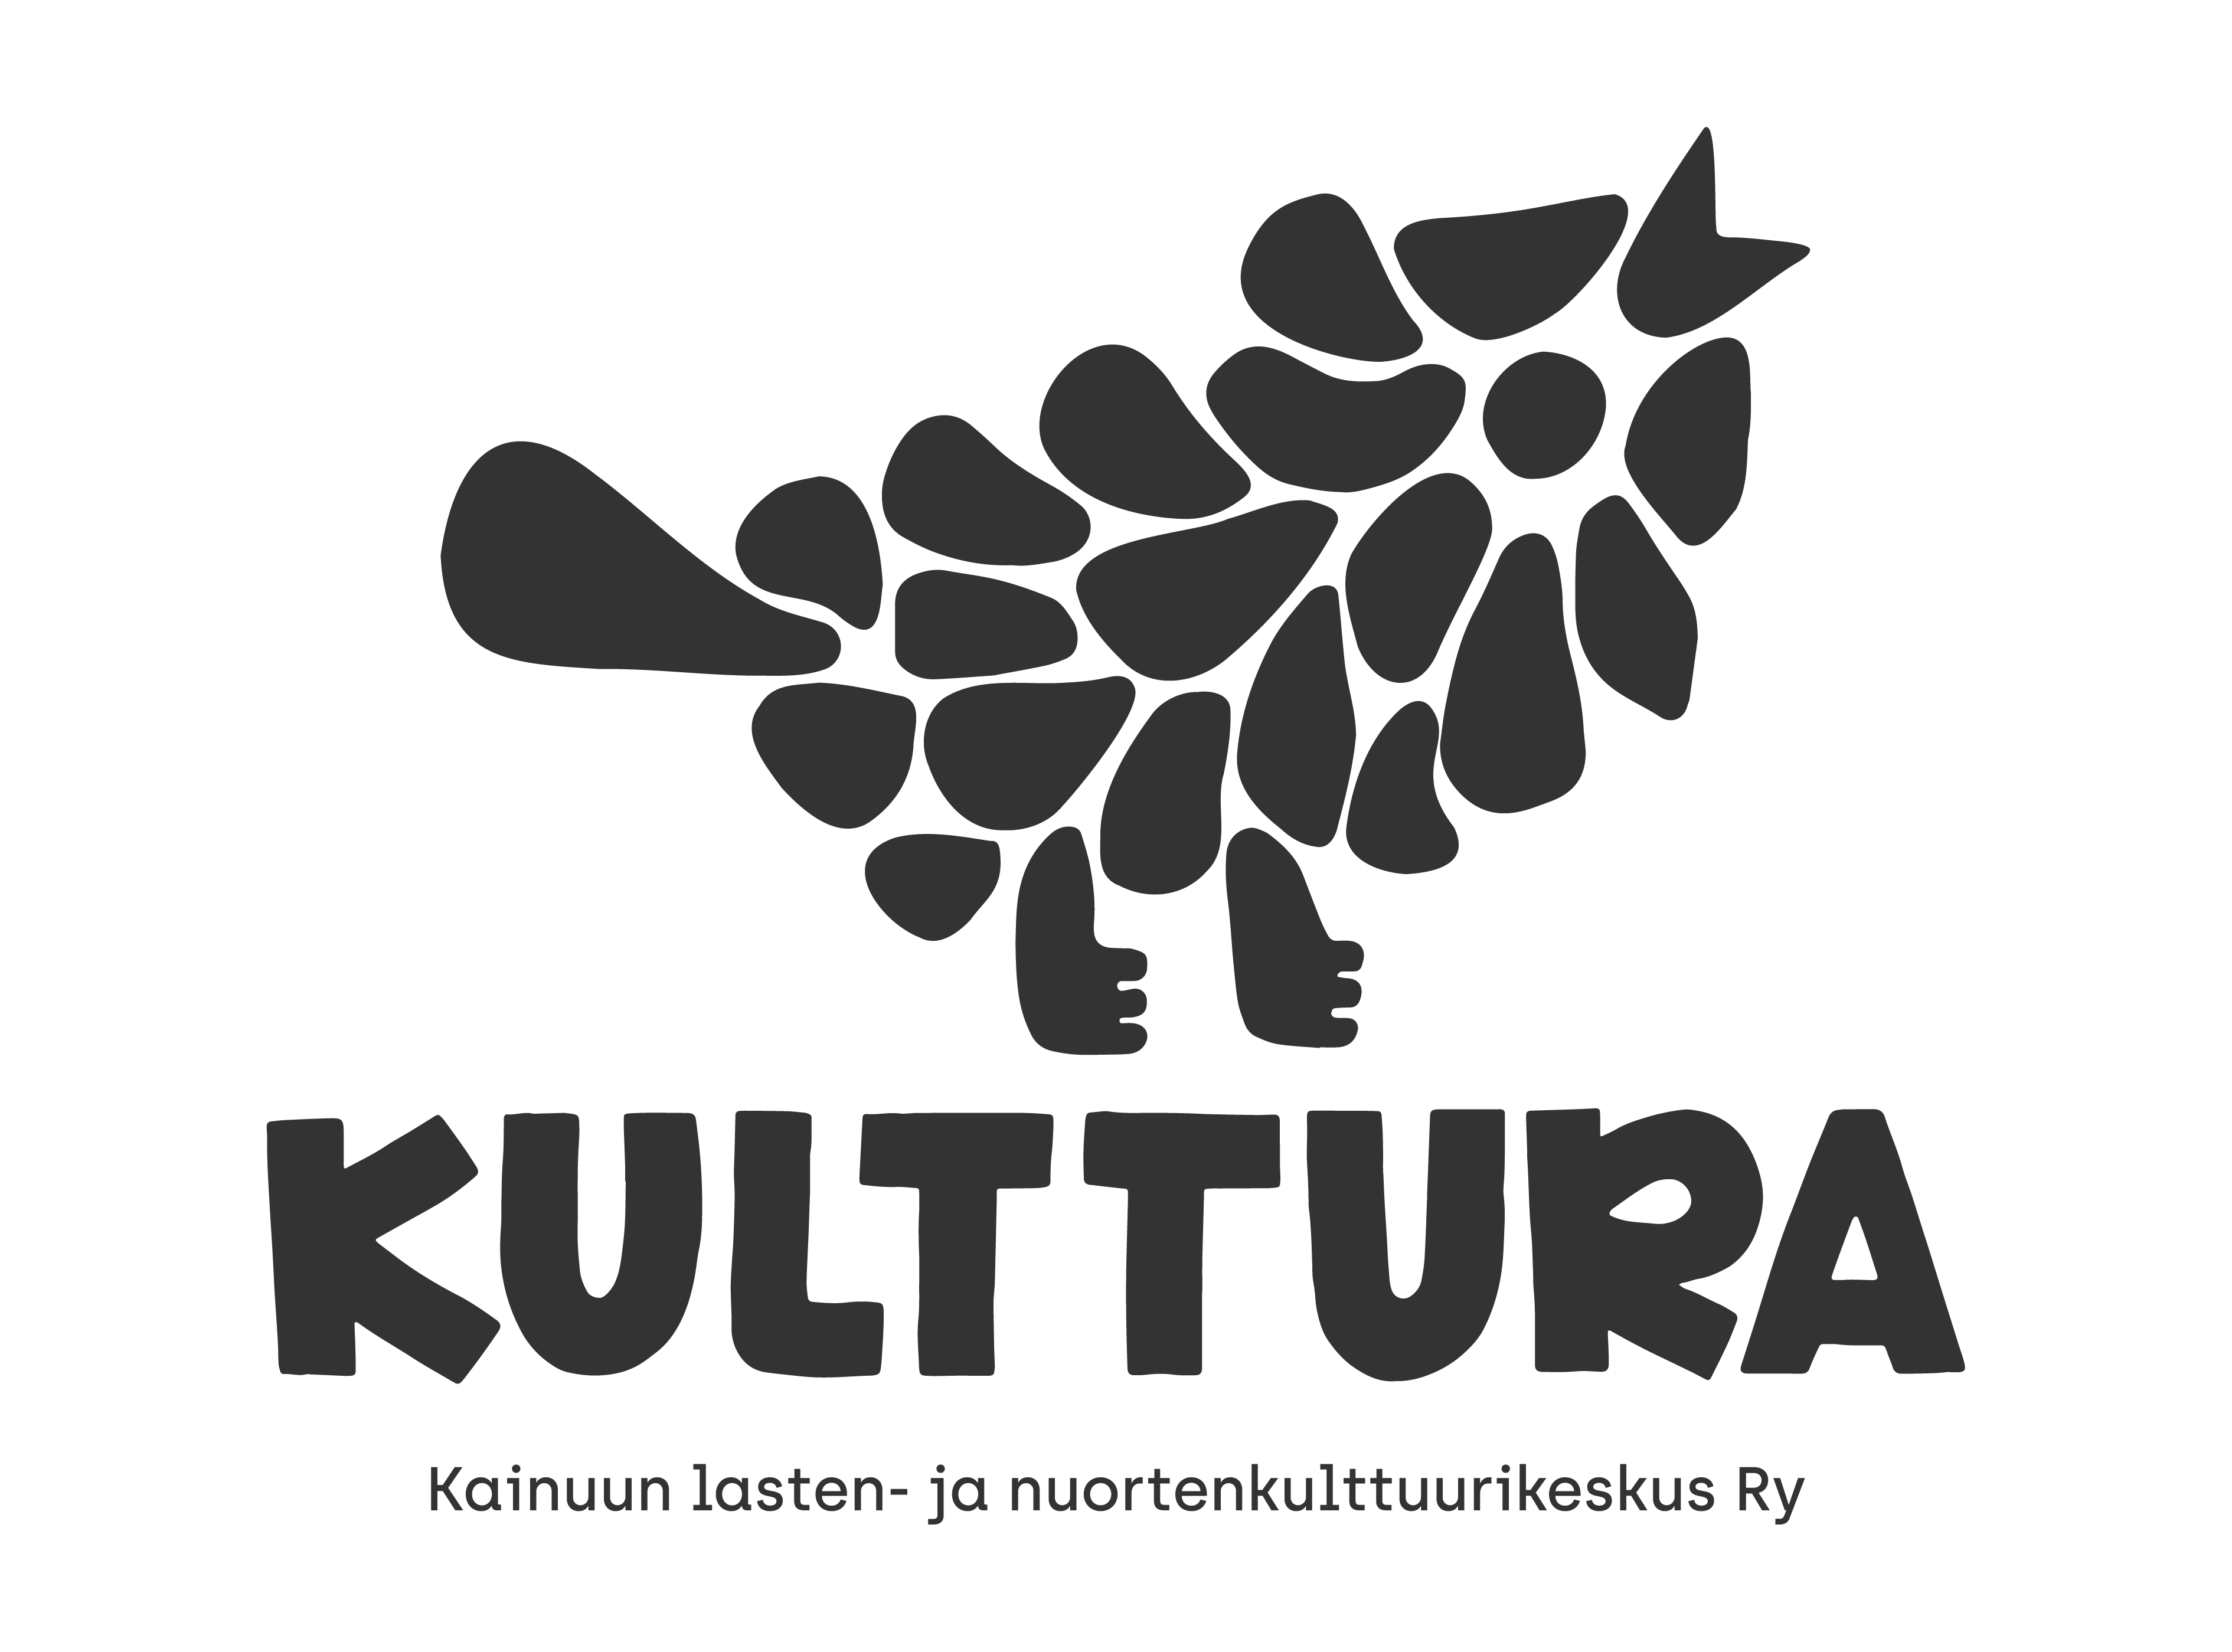 Kulttura logo – Kainuun lasten- ja nuortenkulttuurikeskus ry